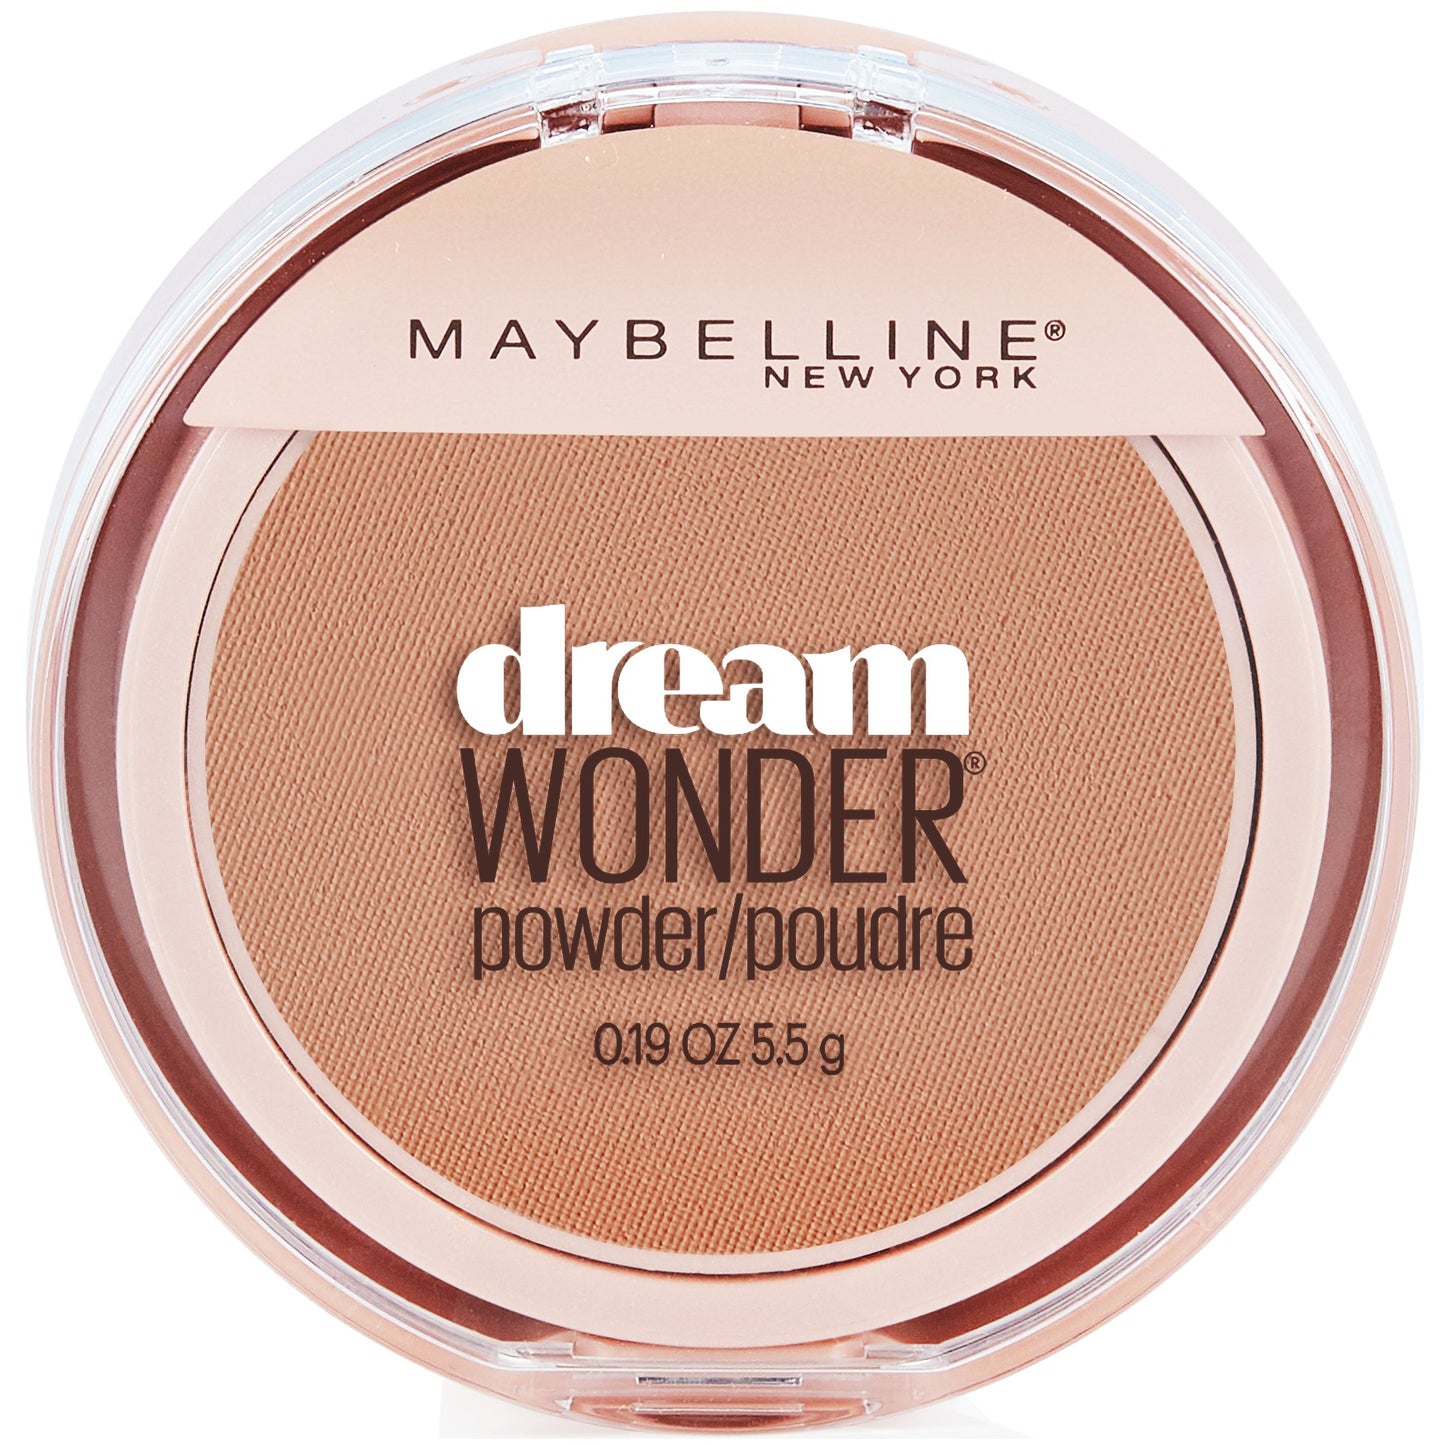 Maybelline New York Dream Wonder Powder Makeup, Pure Beige, 0.19 oz.